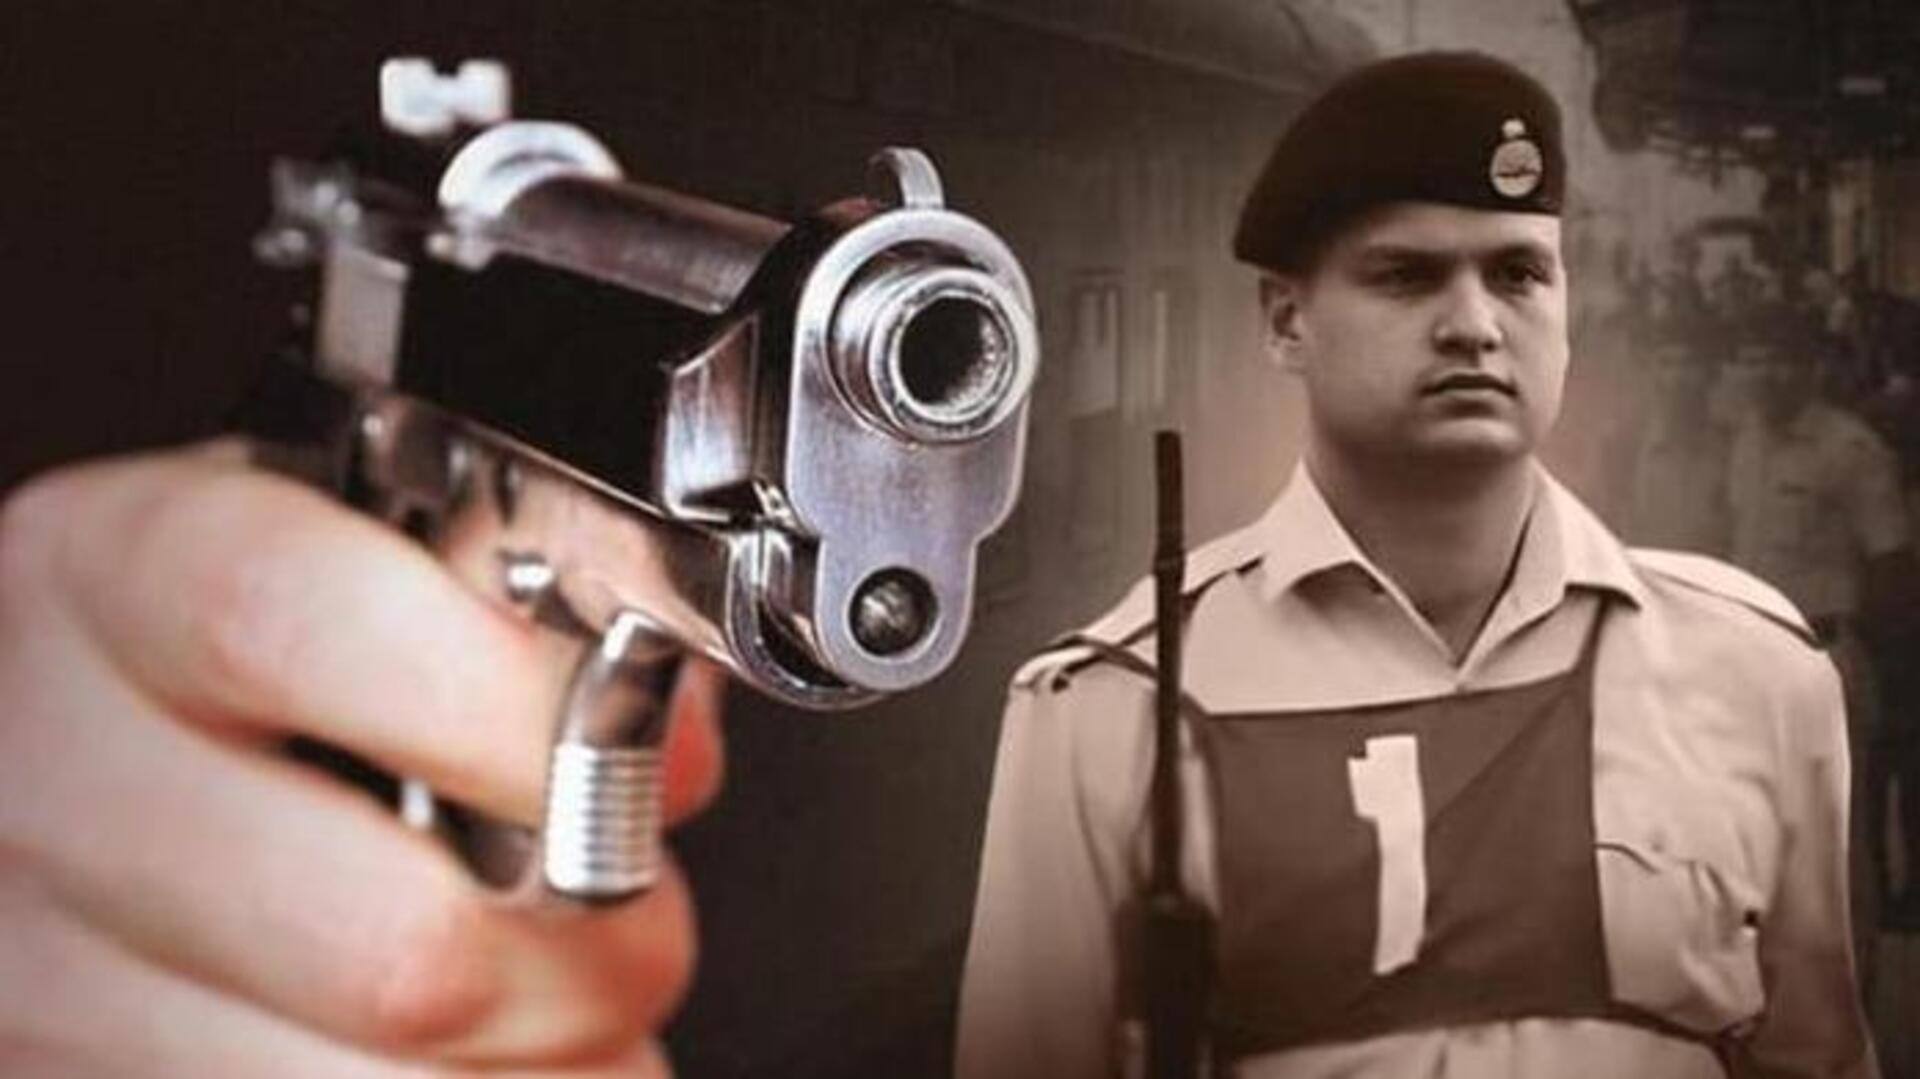 जयपुर-मुंबई एक्सप्रेस में गोलीबारी करने वाला कांस्टेबल मानसिक तौर पर पूरी तरह स्वस्थ, आरोपपत्र में दावा